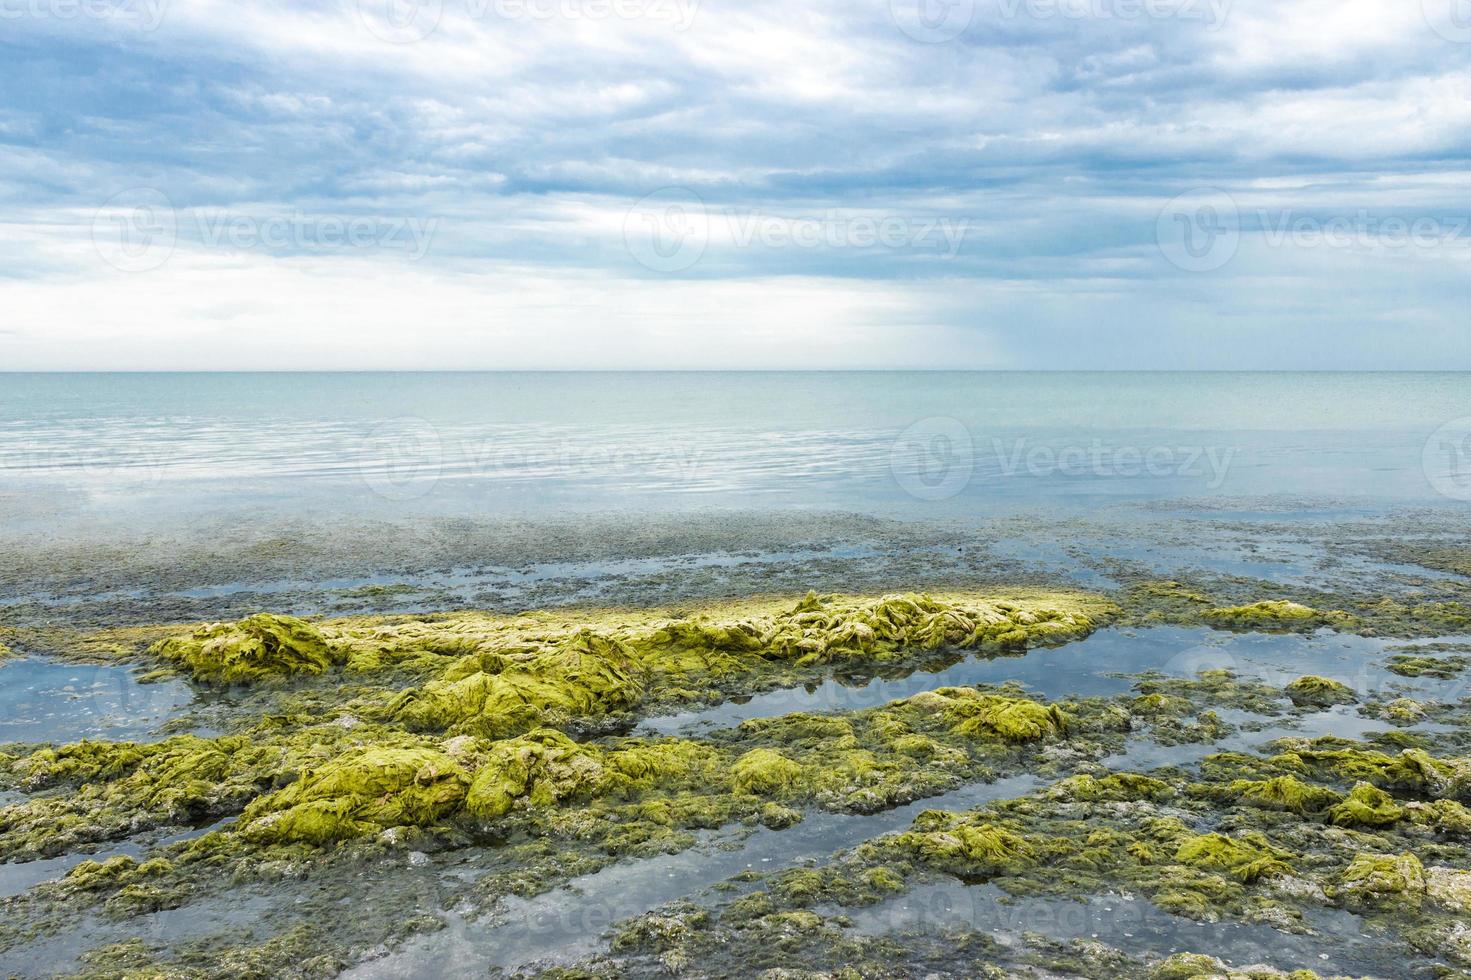 des vagues d'eau de mer jettent des algues vertes sur la plage un jour de pluie. concept d'écologie et de catastrophes naturelles photo